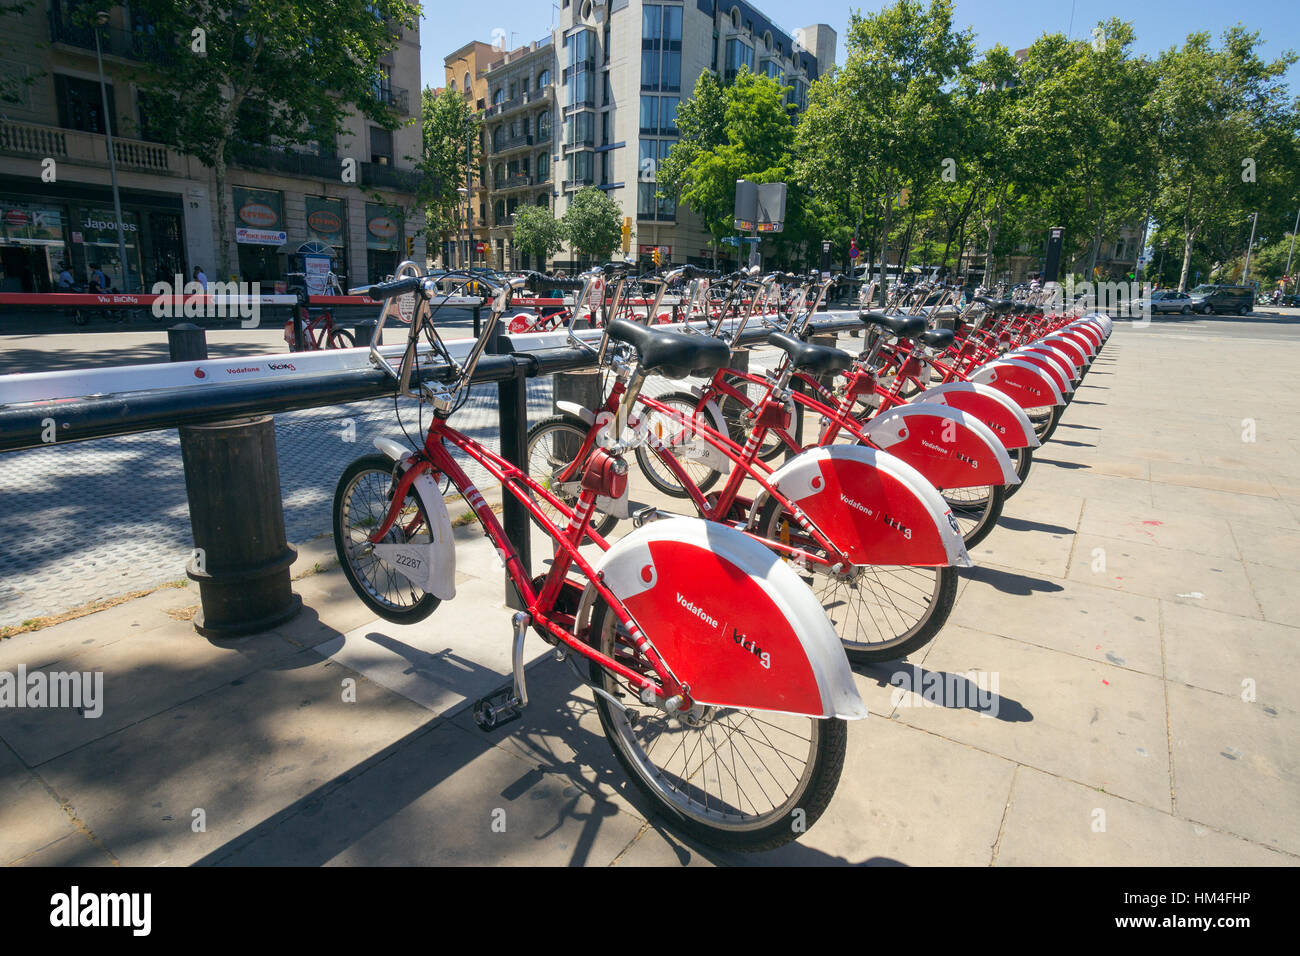 Barcelone - Mai 21, 2016 : Ligne d'un service de location de vélos à partir de Vodafone Bicing est un self-service, système de partage de vélo pour les petits trajets. Banque D'Images